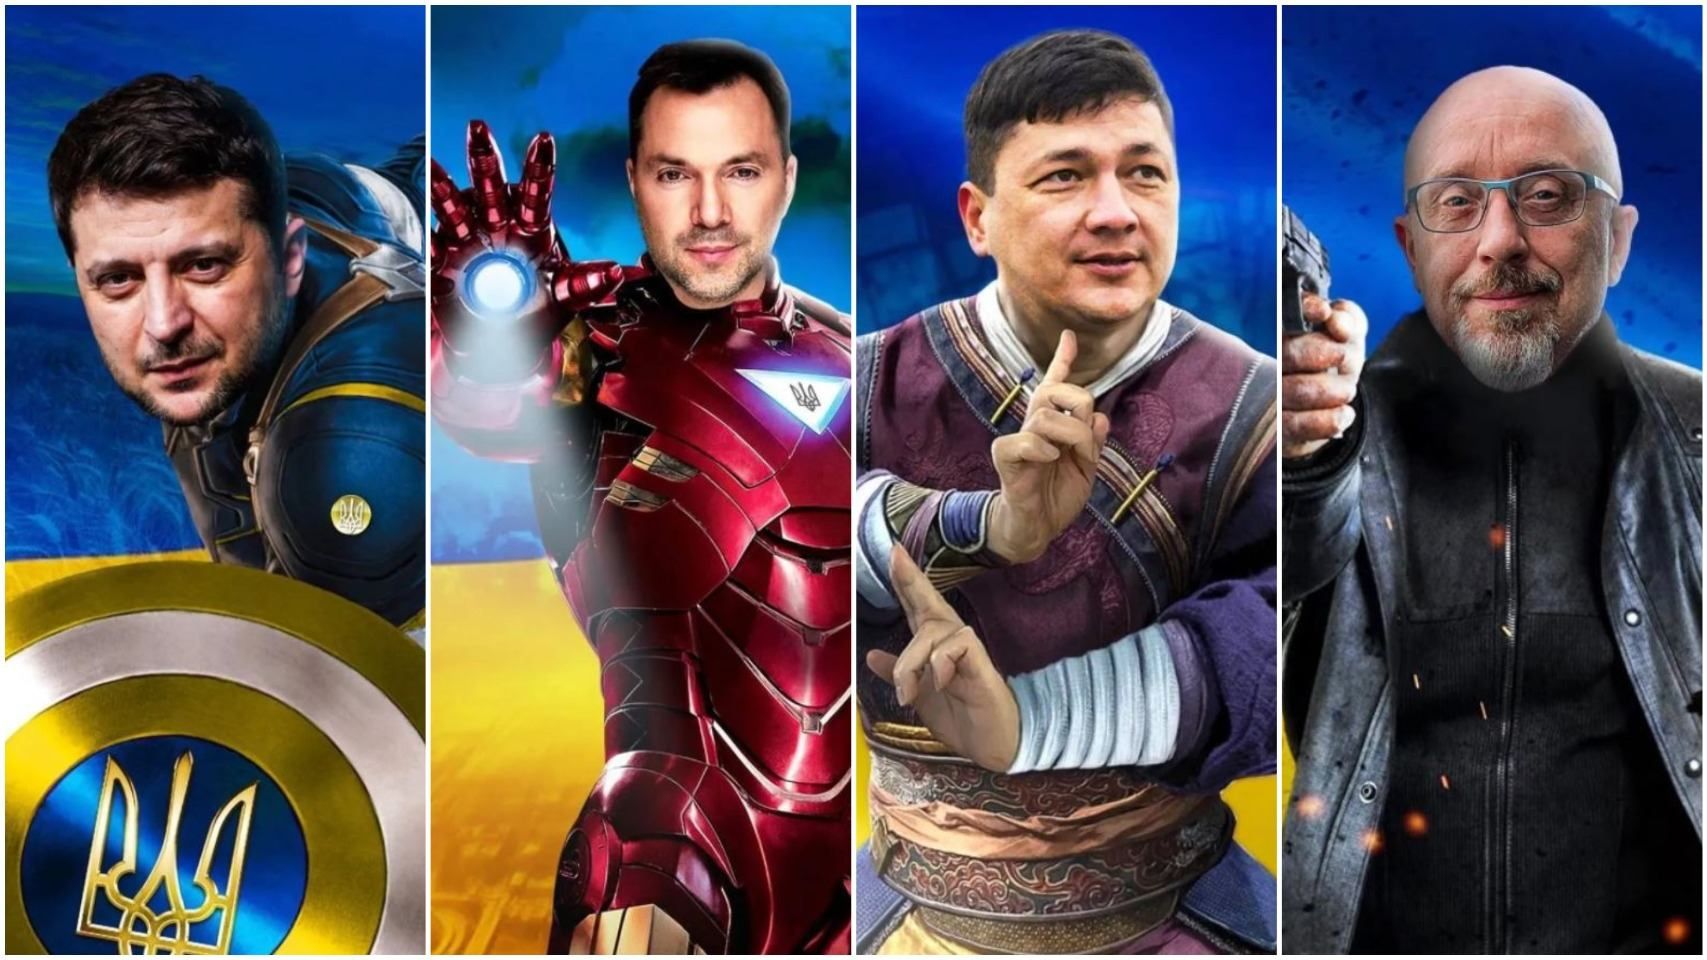 Як виглядають Зеленський, Арестович, Кім у всесвіті Marvel: супергеройські фото - Кіно